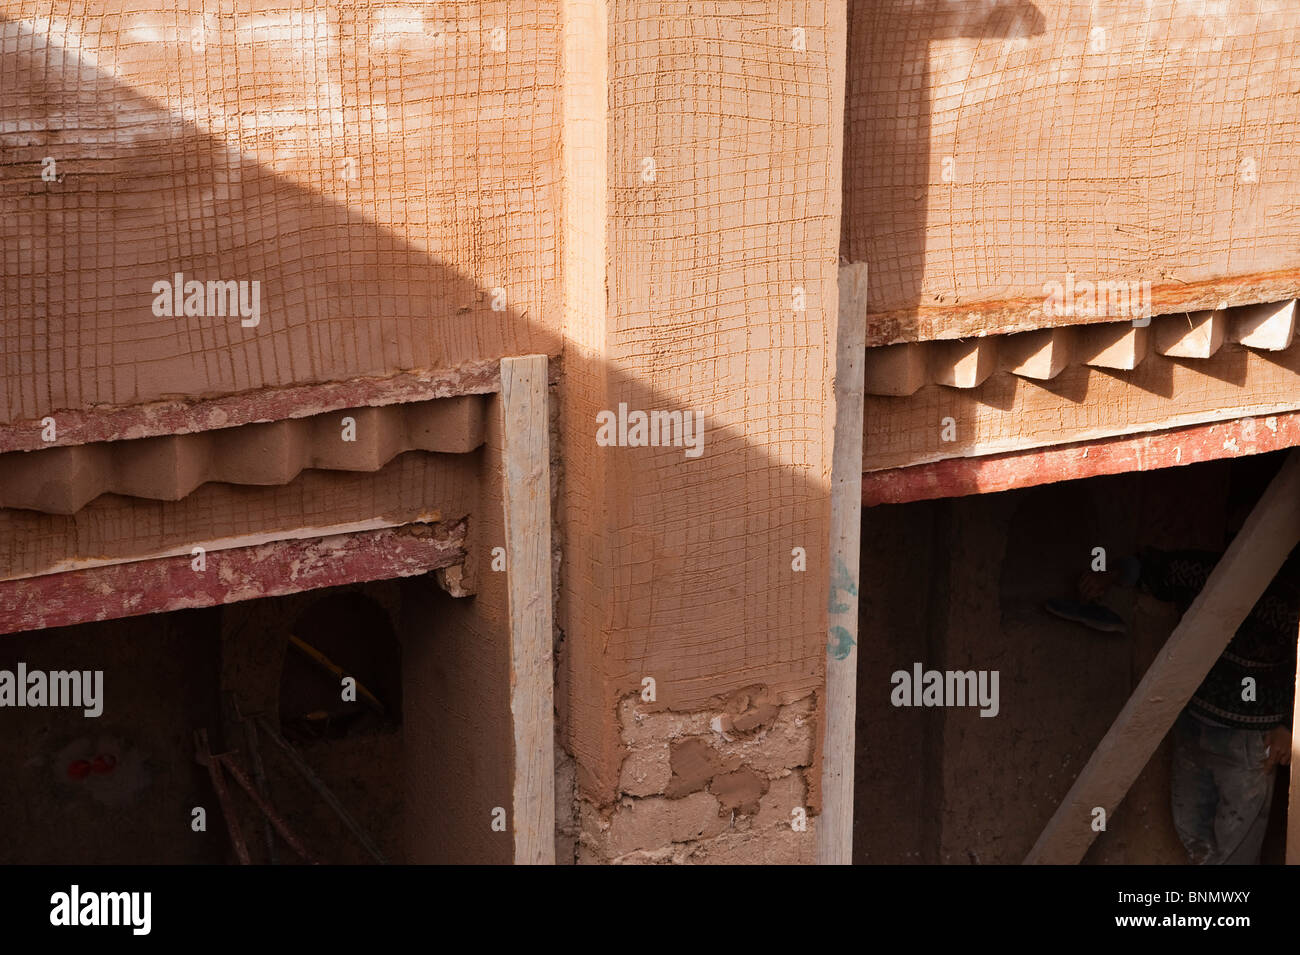 Détail, bâtiment en brique de boue traditionnel, Figuig, province de Figuig, région orientale, le Maroc. Banque D'Images